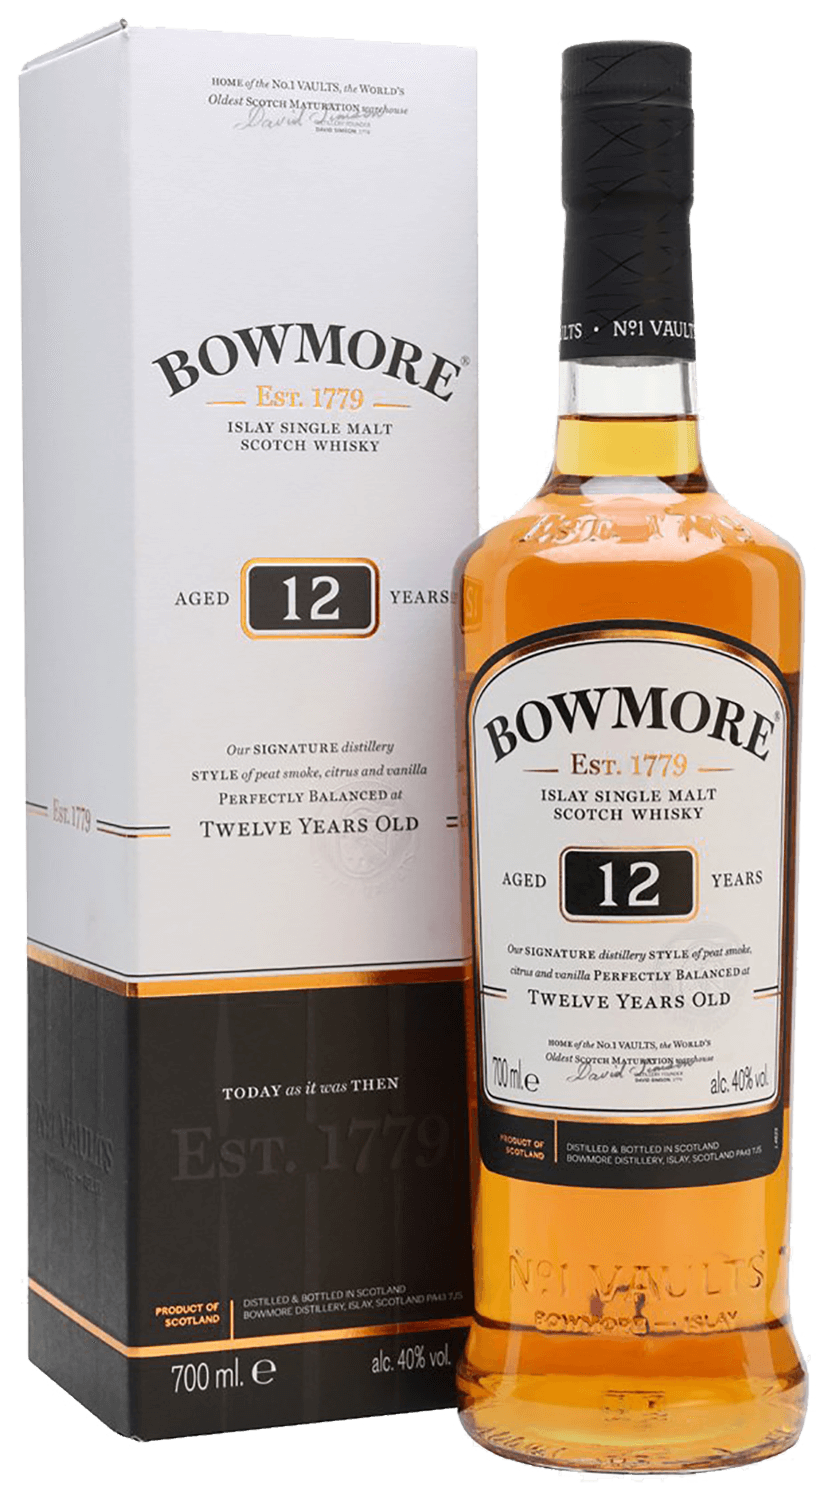 Bowmore Islay Single Malt Scotch Whisky 12 y.o. (gift box) laphroaig select islay single malt scotch whisky gift box